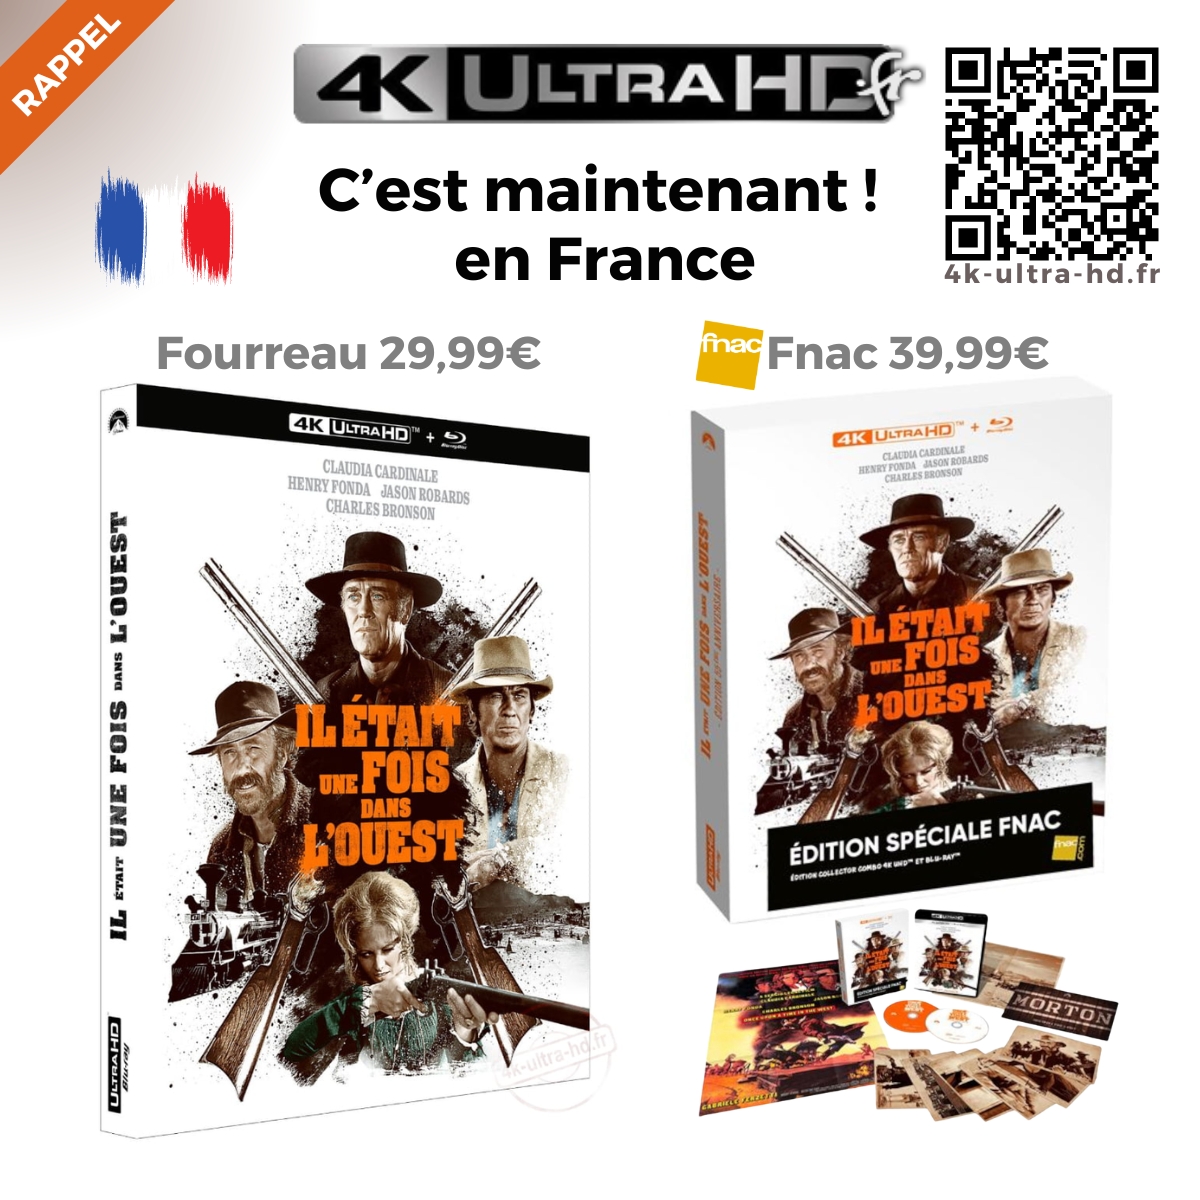 🔔 C'est maintenant pour le 4K « 𝐈𝐥 𝐞́𝐭𝐚𝐢𝐭 𝐮𝐧𝐞 𝐟𝐨𝐢𝐬 𝐝𝐚𝐧𝐬 𝐥’𝐎𝐮𝐞𝐬𝐭 » en France 🇫🇷
ℹ️ Edition Standard avec Fourreau ou Collector Fnac

𝐃𝐞́𝐭𝐚𝐢𝐥𝐬 & 𝐏𝐫𝐞́𝐜𝐨.👉 4k-ultra-hd.fr/film/il-etait-…

#iletaitunefoisdanslouest de #SergioLeone #editionlimitee